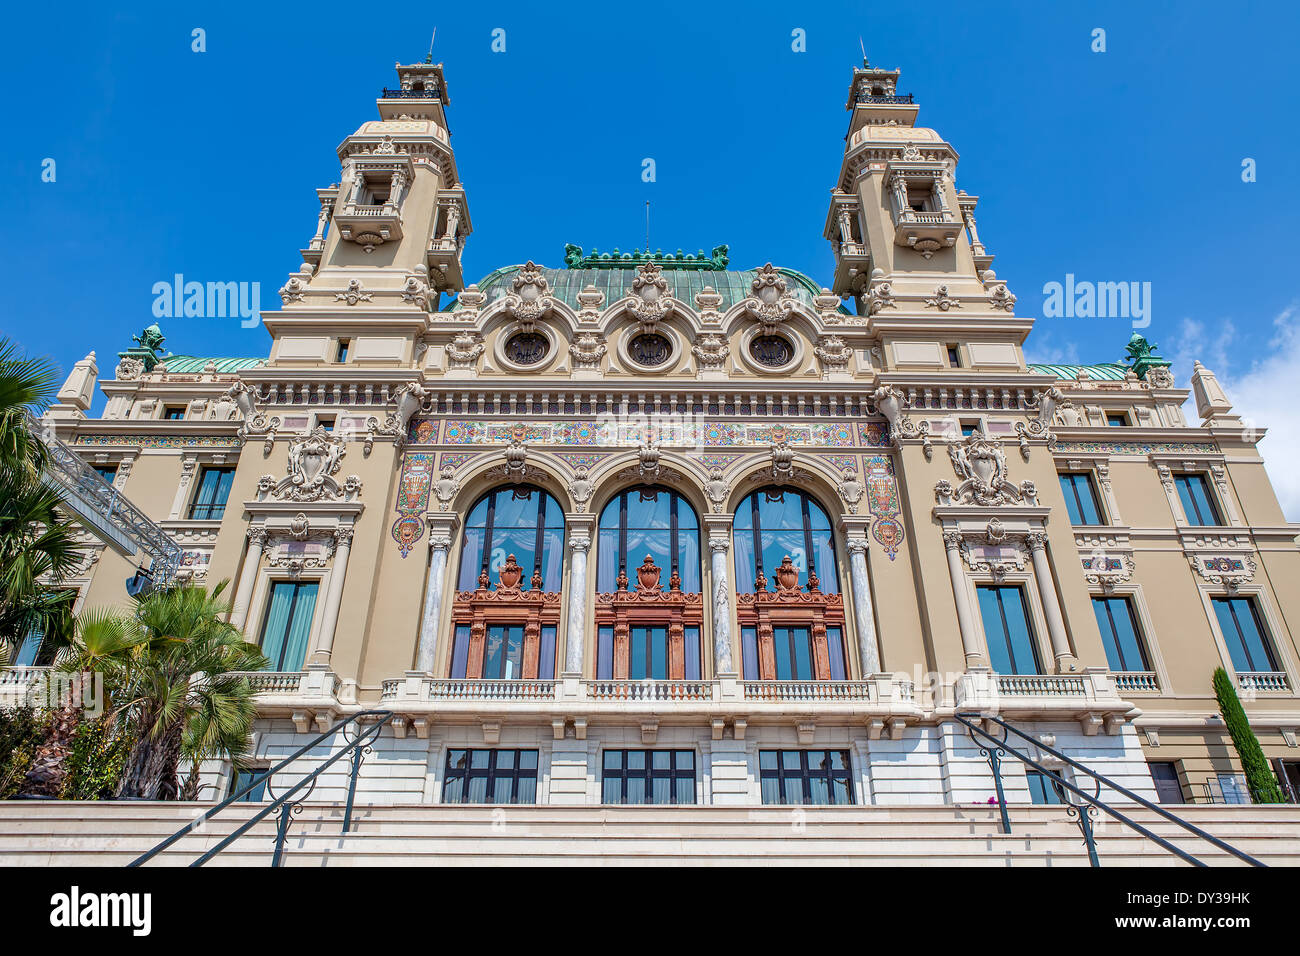 La facciata della vendita Garnier - entertainment complex contenente opera house e il Casinò di Monte Carlo, Monaco. Foto Stock